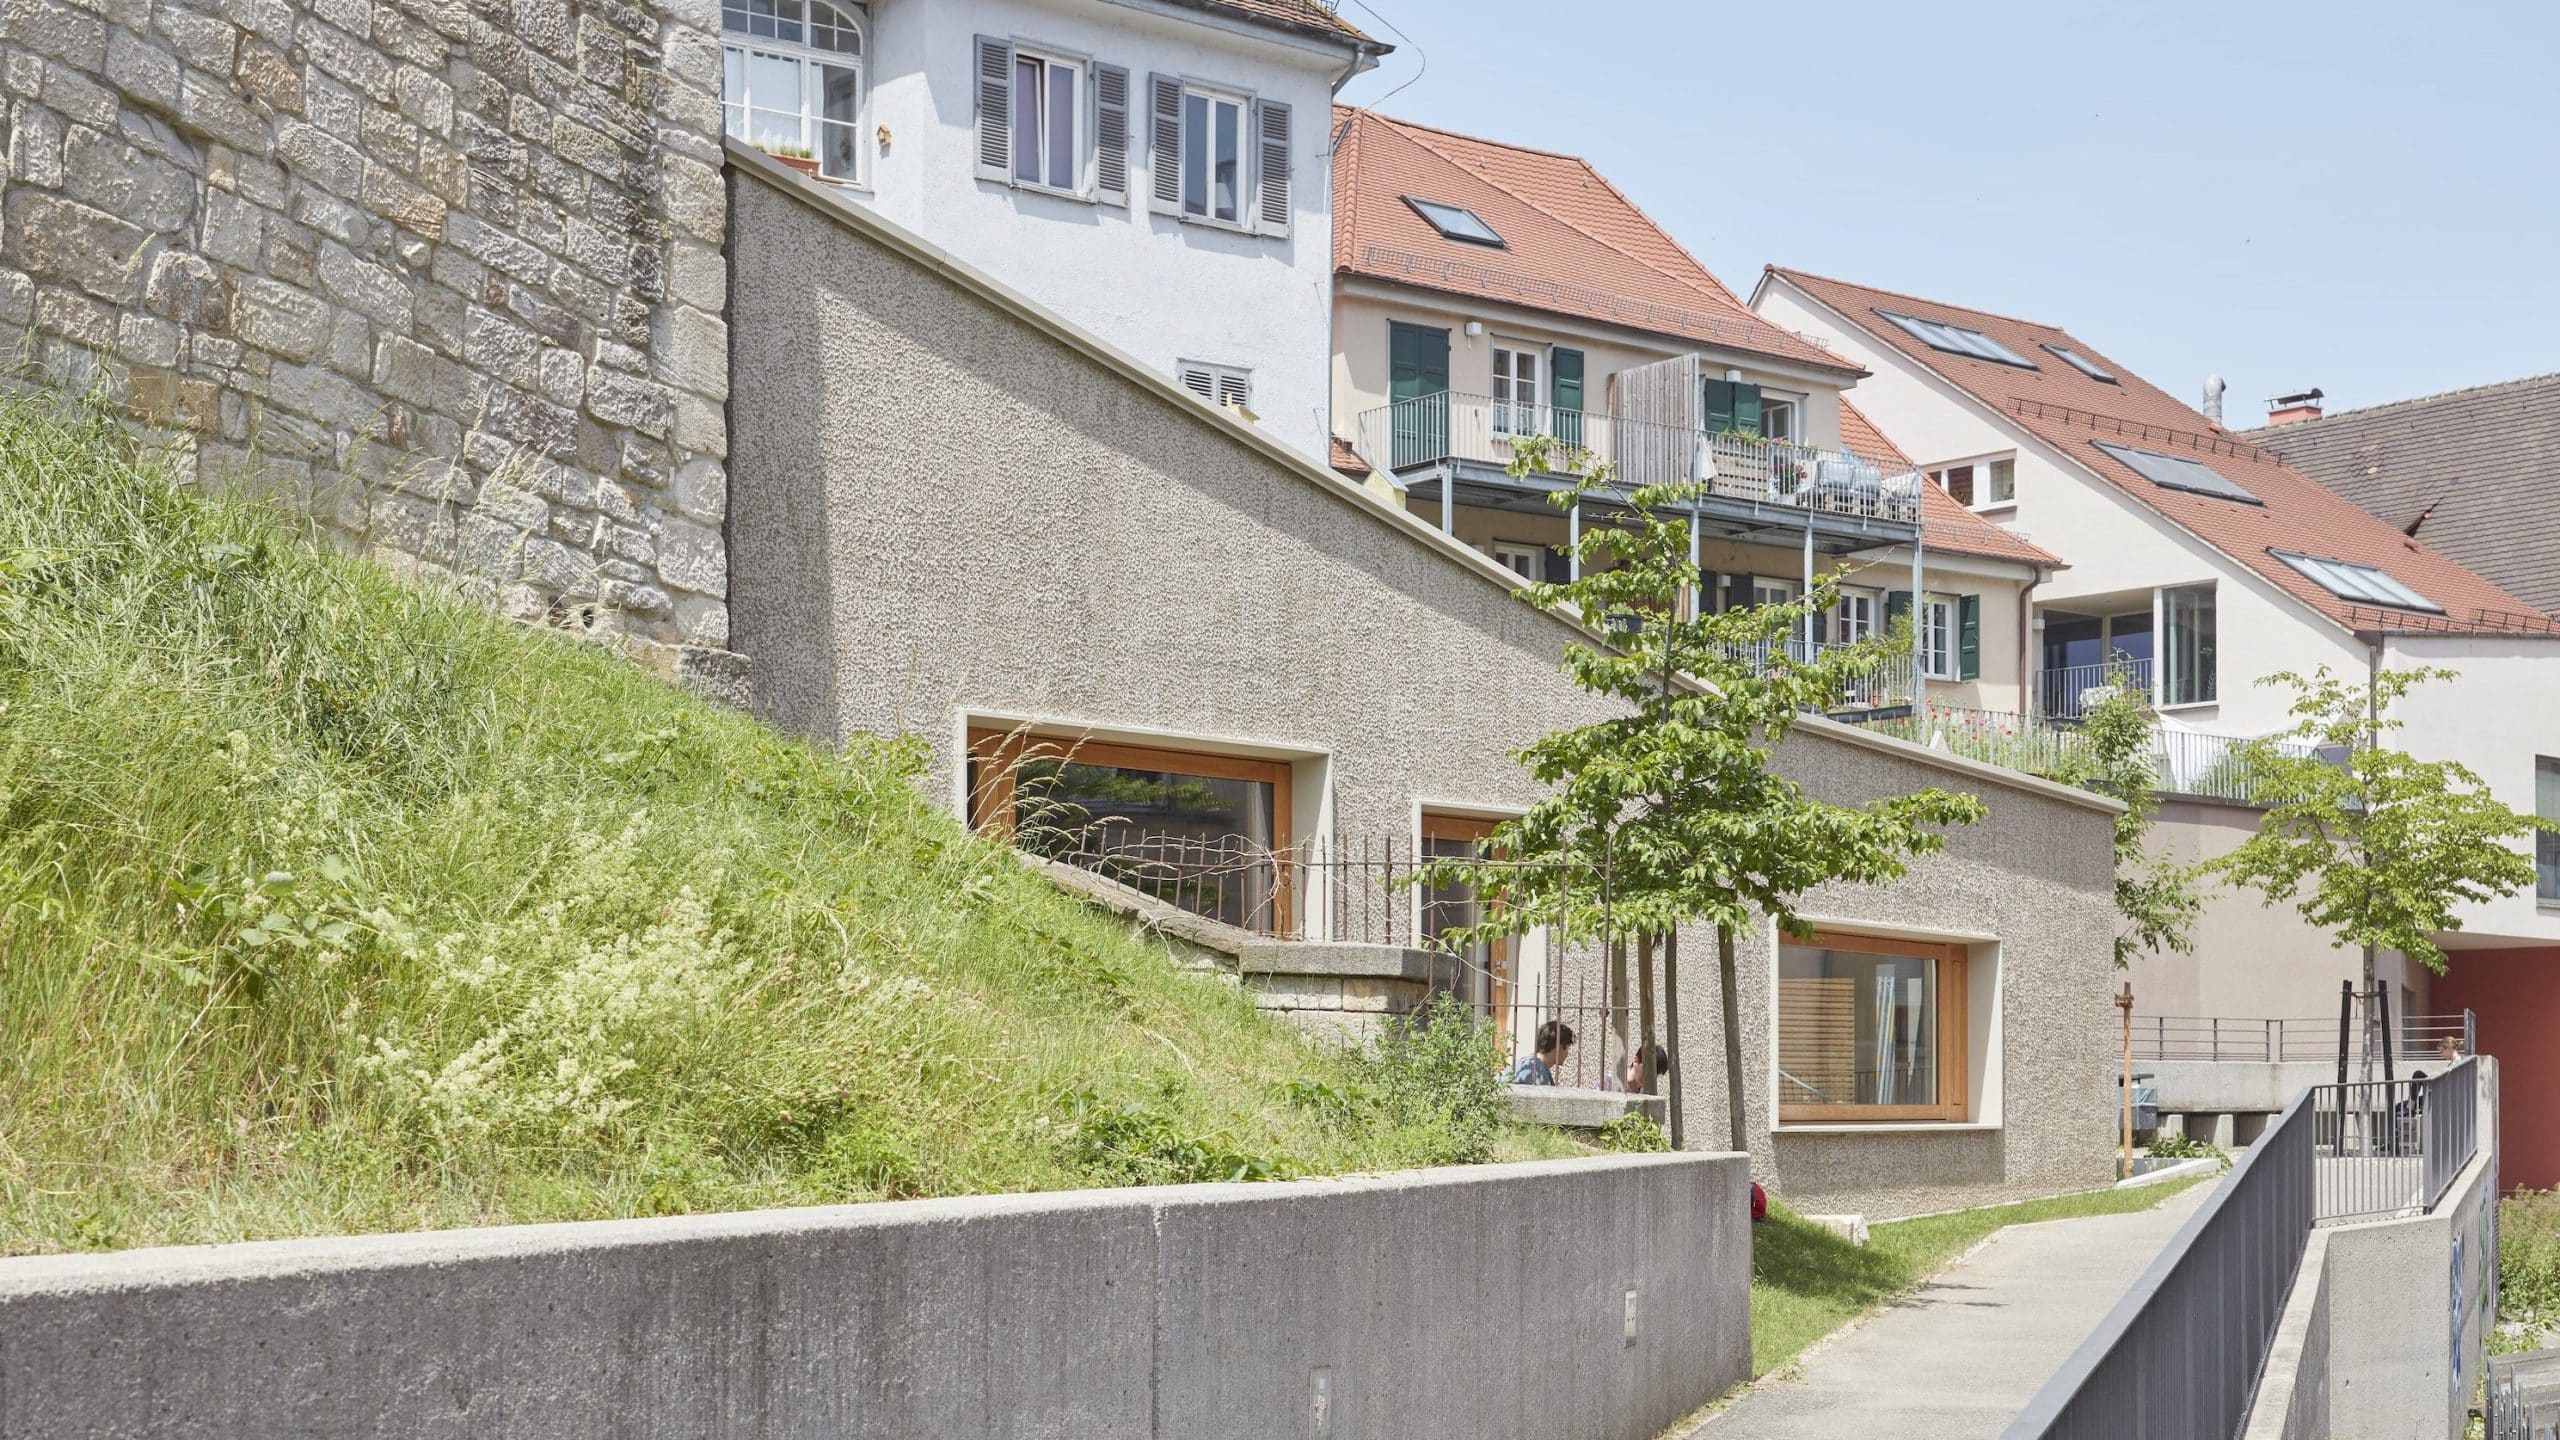 Außenansicht des Wohn-und Geschäftshauses von Dannien Roller Architekten + Partner in Tübingen. Foto: Dietmar Strauß.